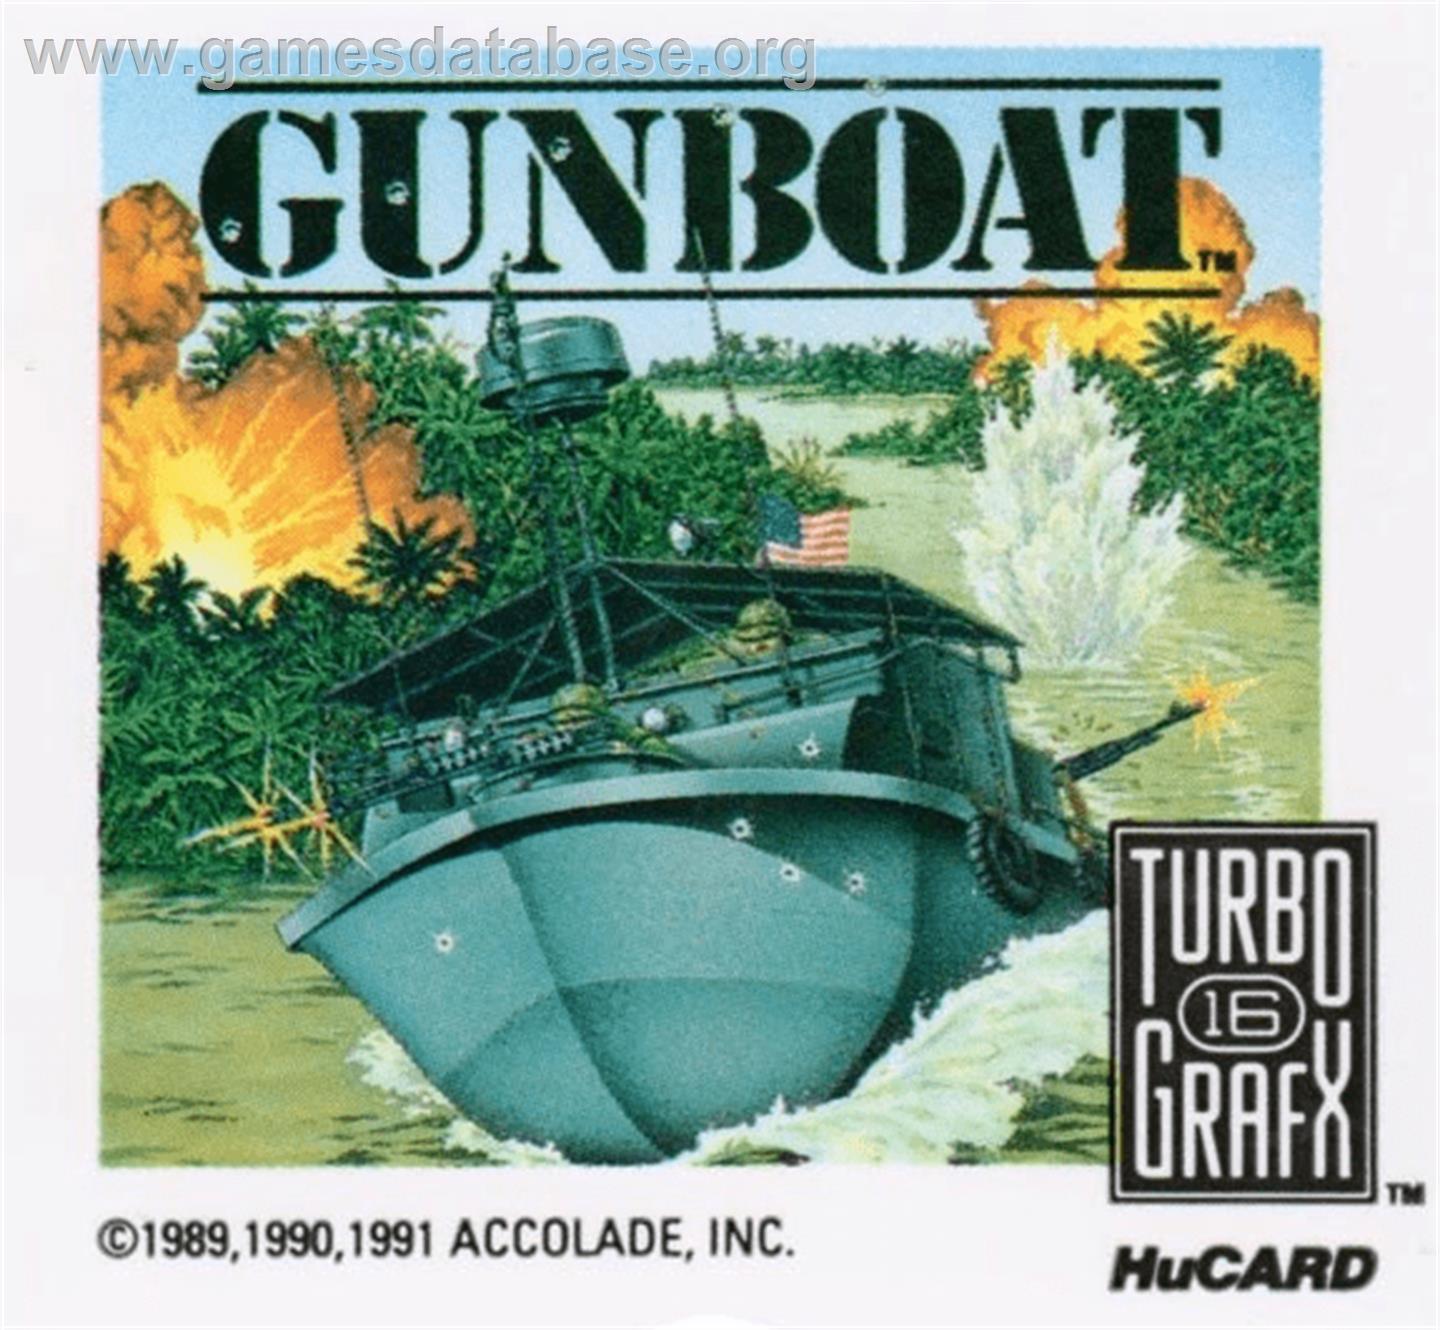 Gunboat - NEC TurboGrafx-16 - Artwork - Cartridge Top